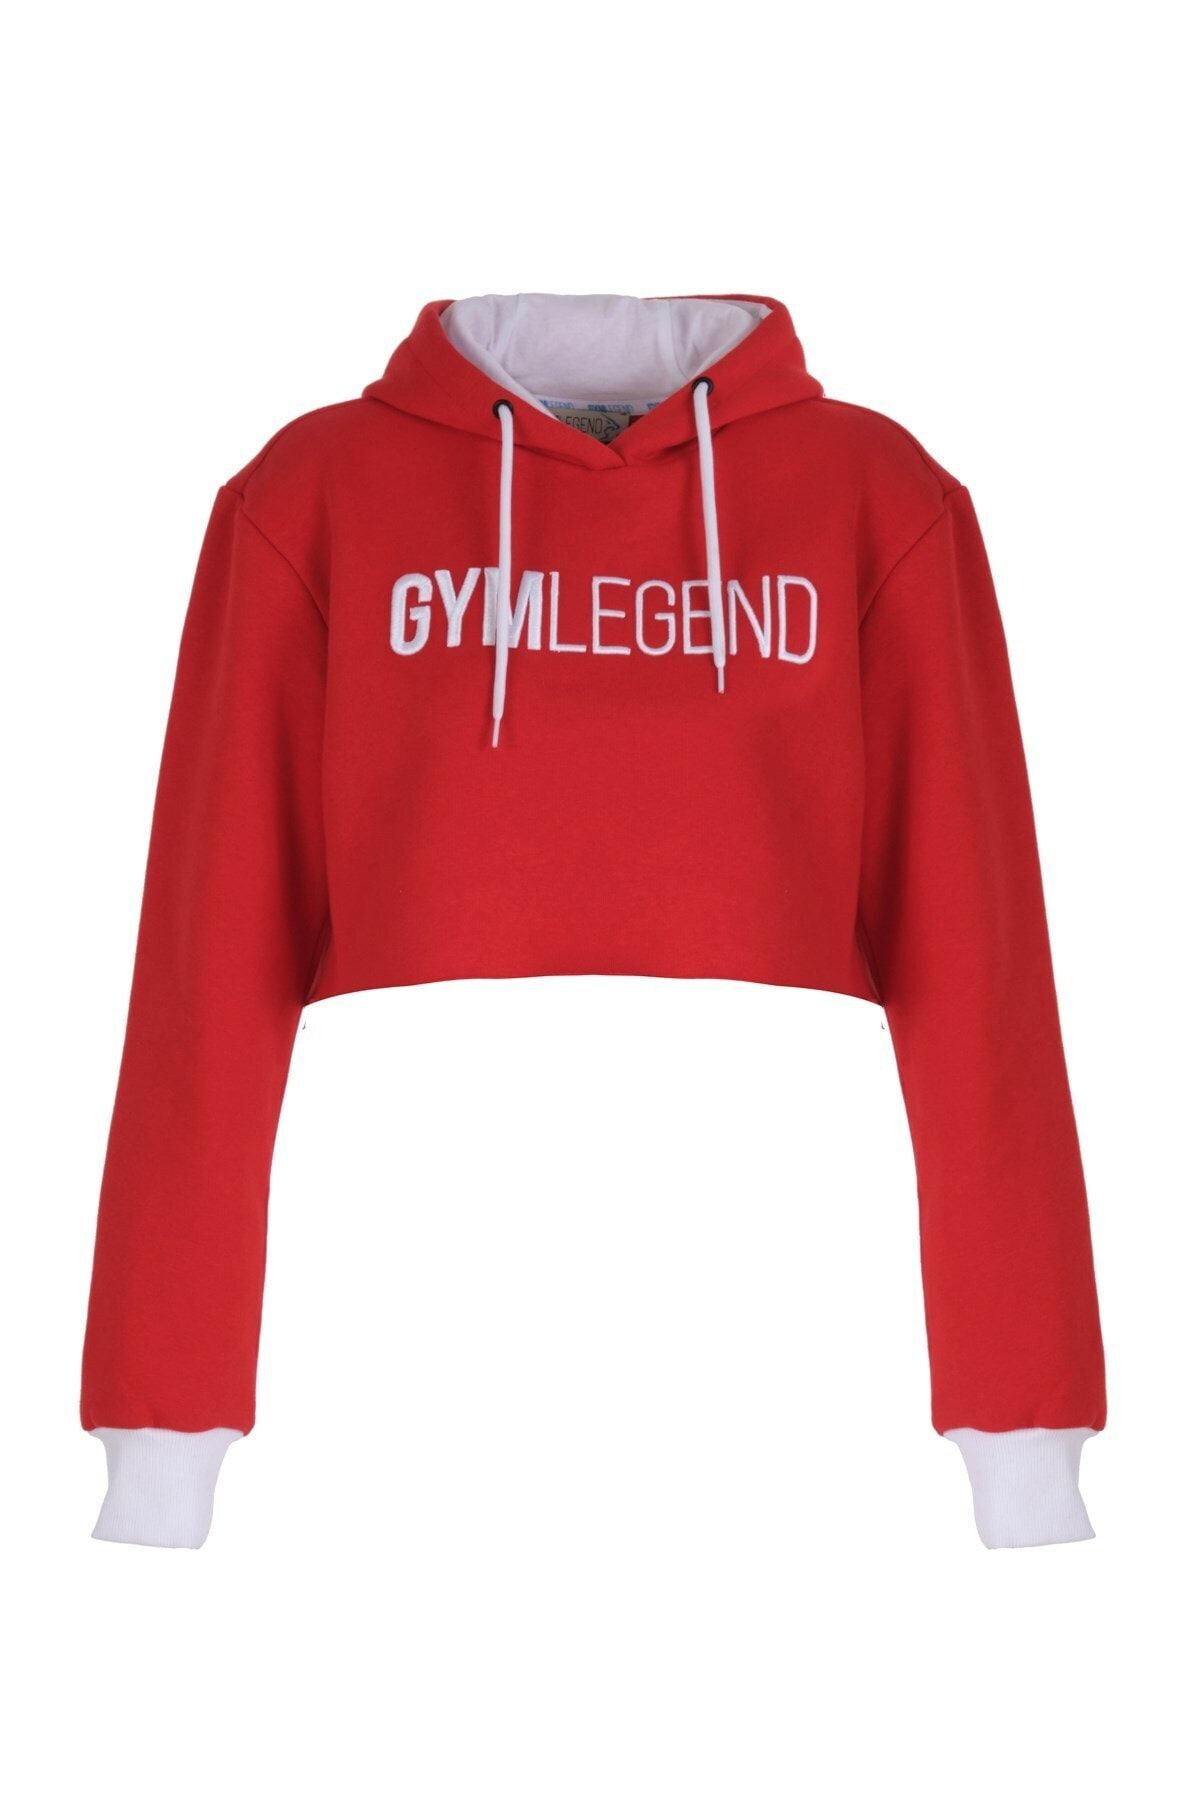 Gymlegend Kadın Kırmızı Kapüşonlu Kısa Sweatshirt